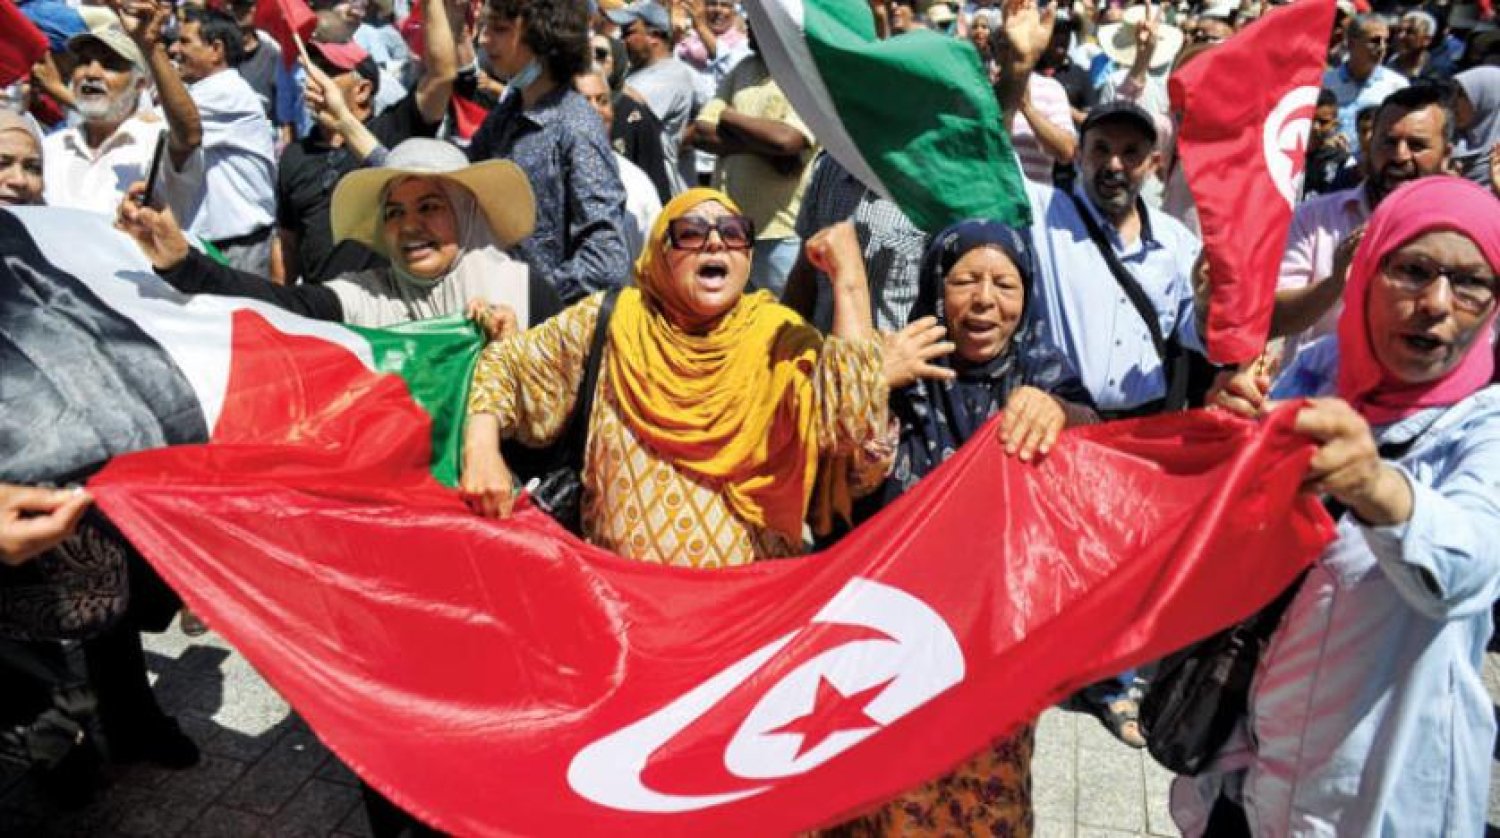 Tunuslular düzenledikleri protestolarda istihdam ve kalkınma talep ediyorlar. (DPA)